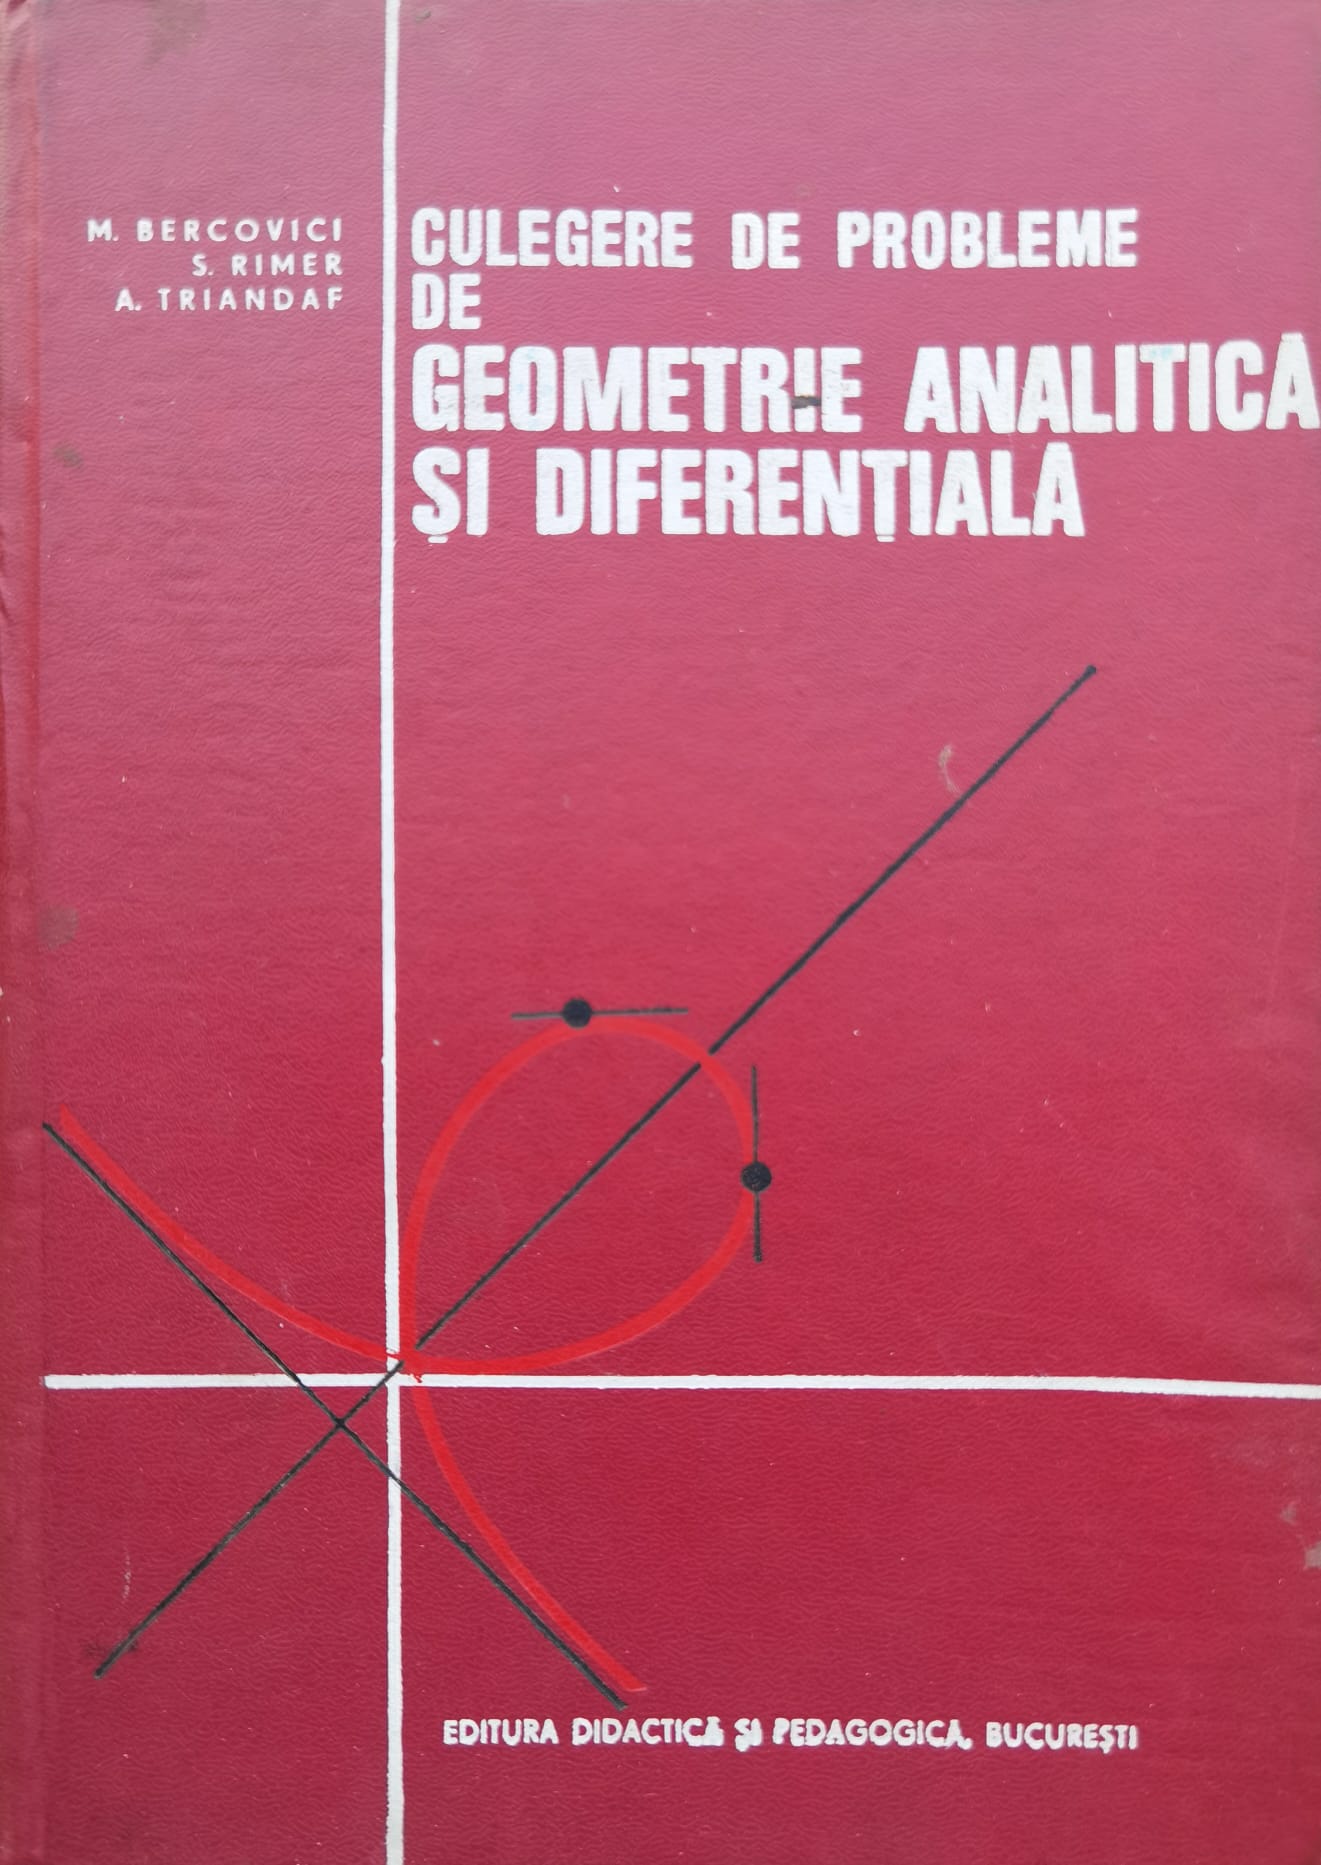 culegere de probleme de geometrie analitica si diferentiala                                          m.bercovici s. rimer a. triandaf                                                                    